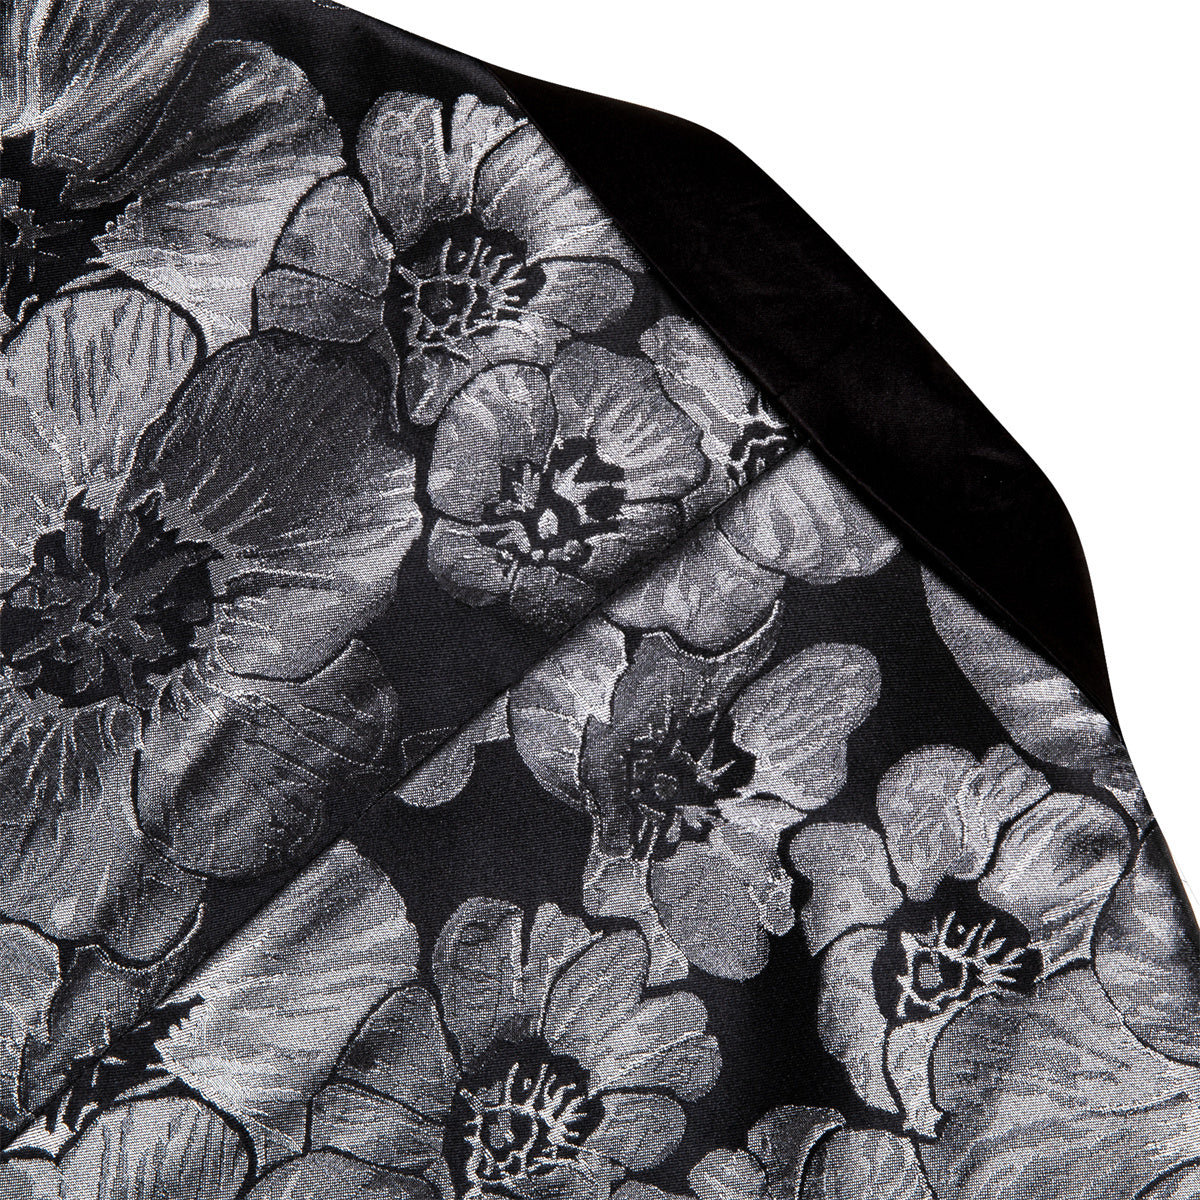 Men's Dress Party Black Floral Suit Jacket Slim One Button Stylish Bla